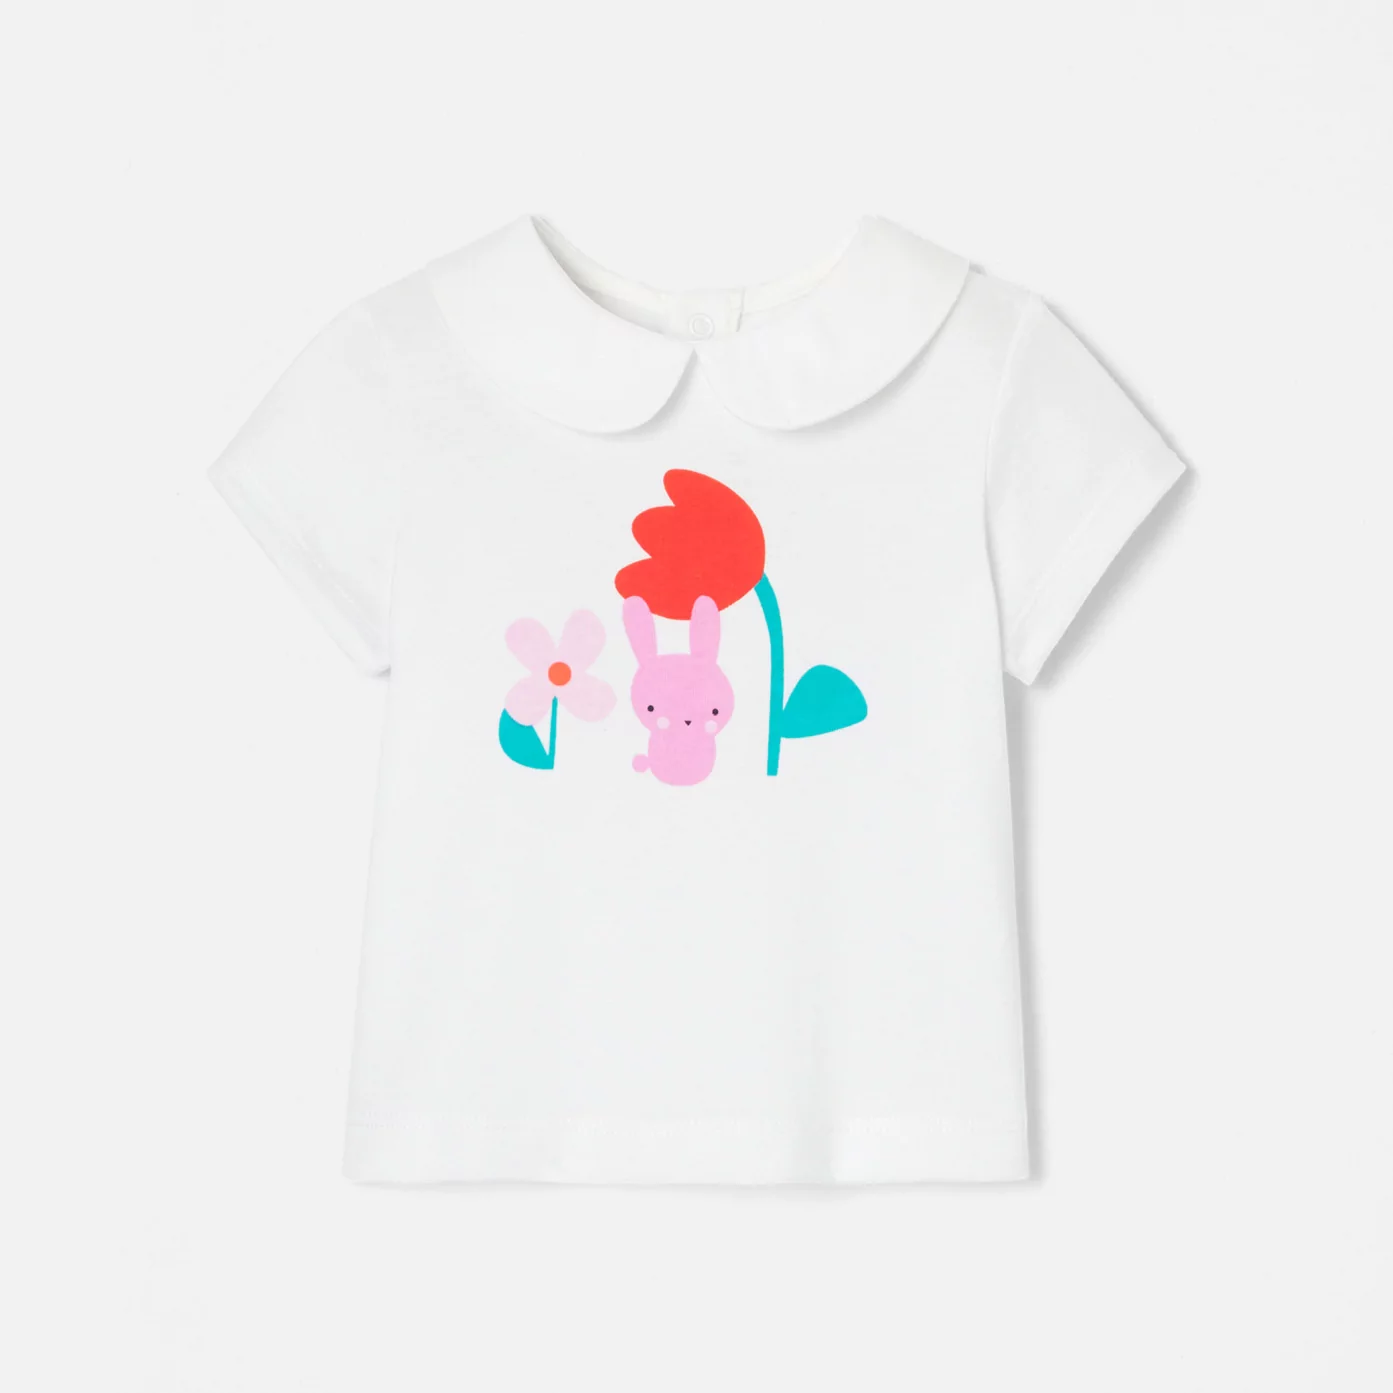 Tričko pro miminko s Claudine límečkem